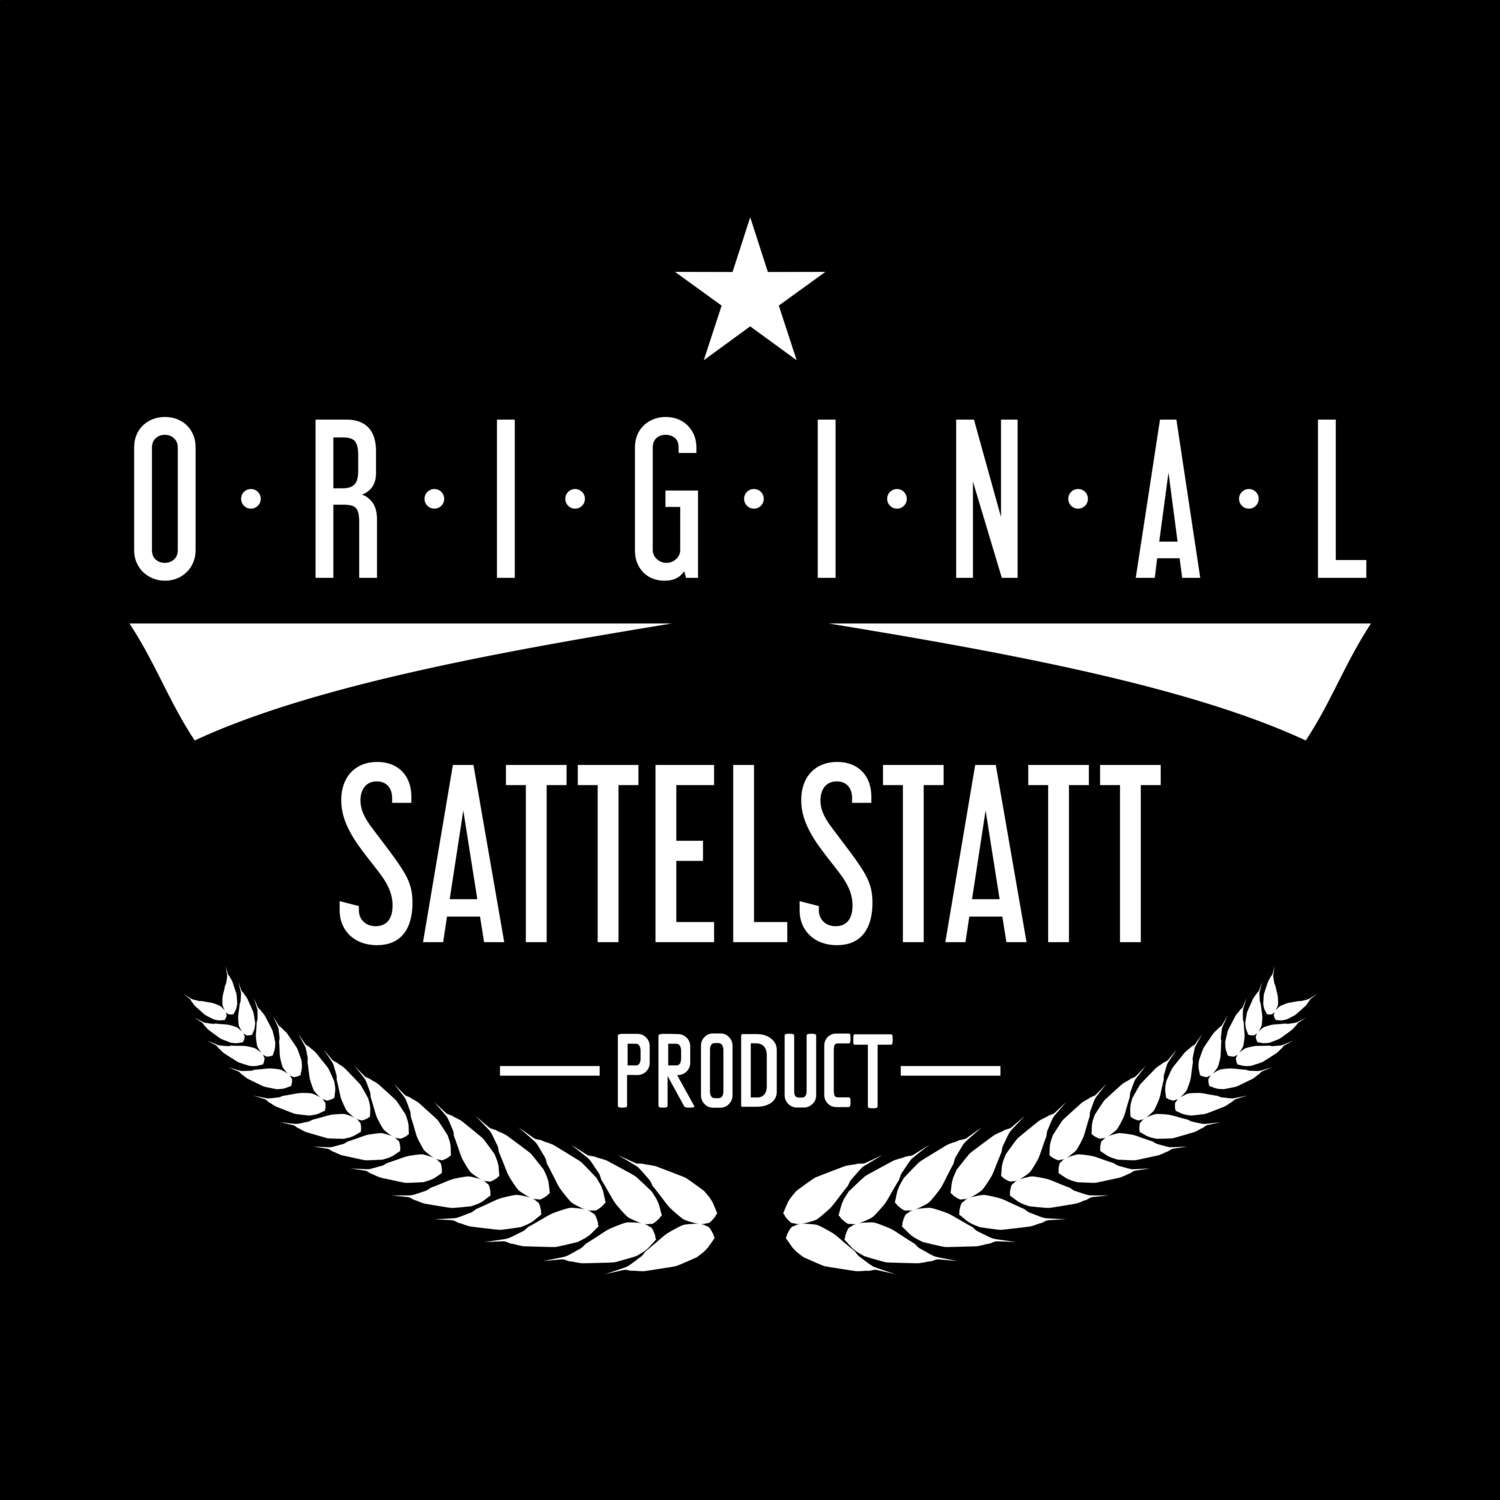 Sattelstatt T-Shirt »Original Product«